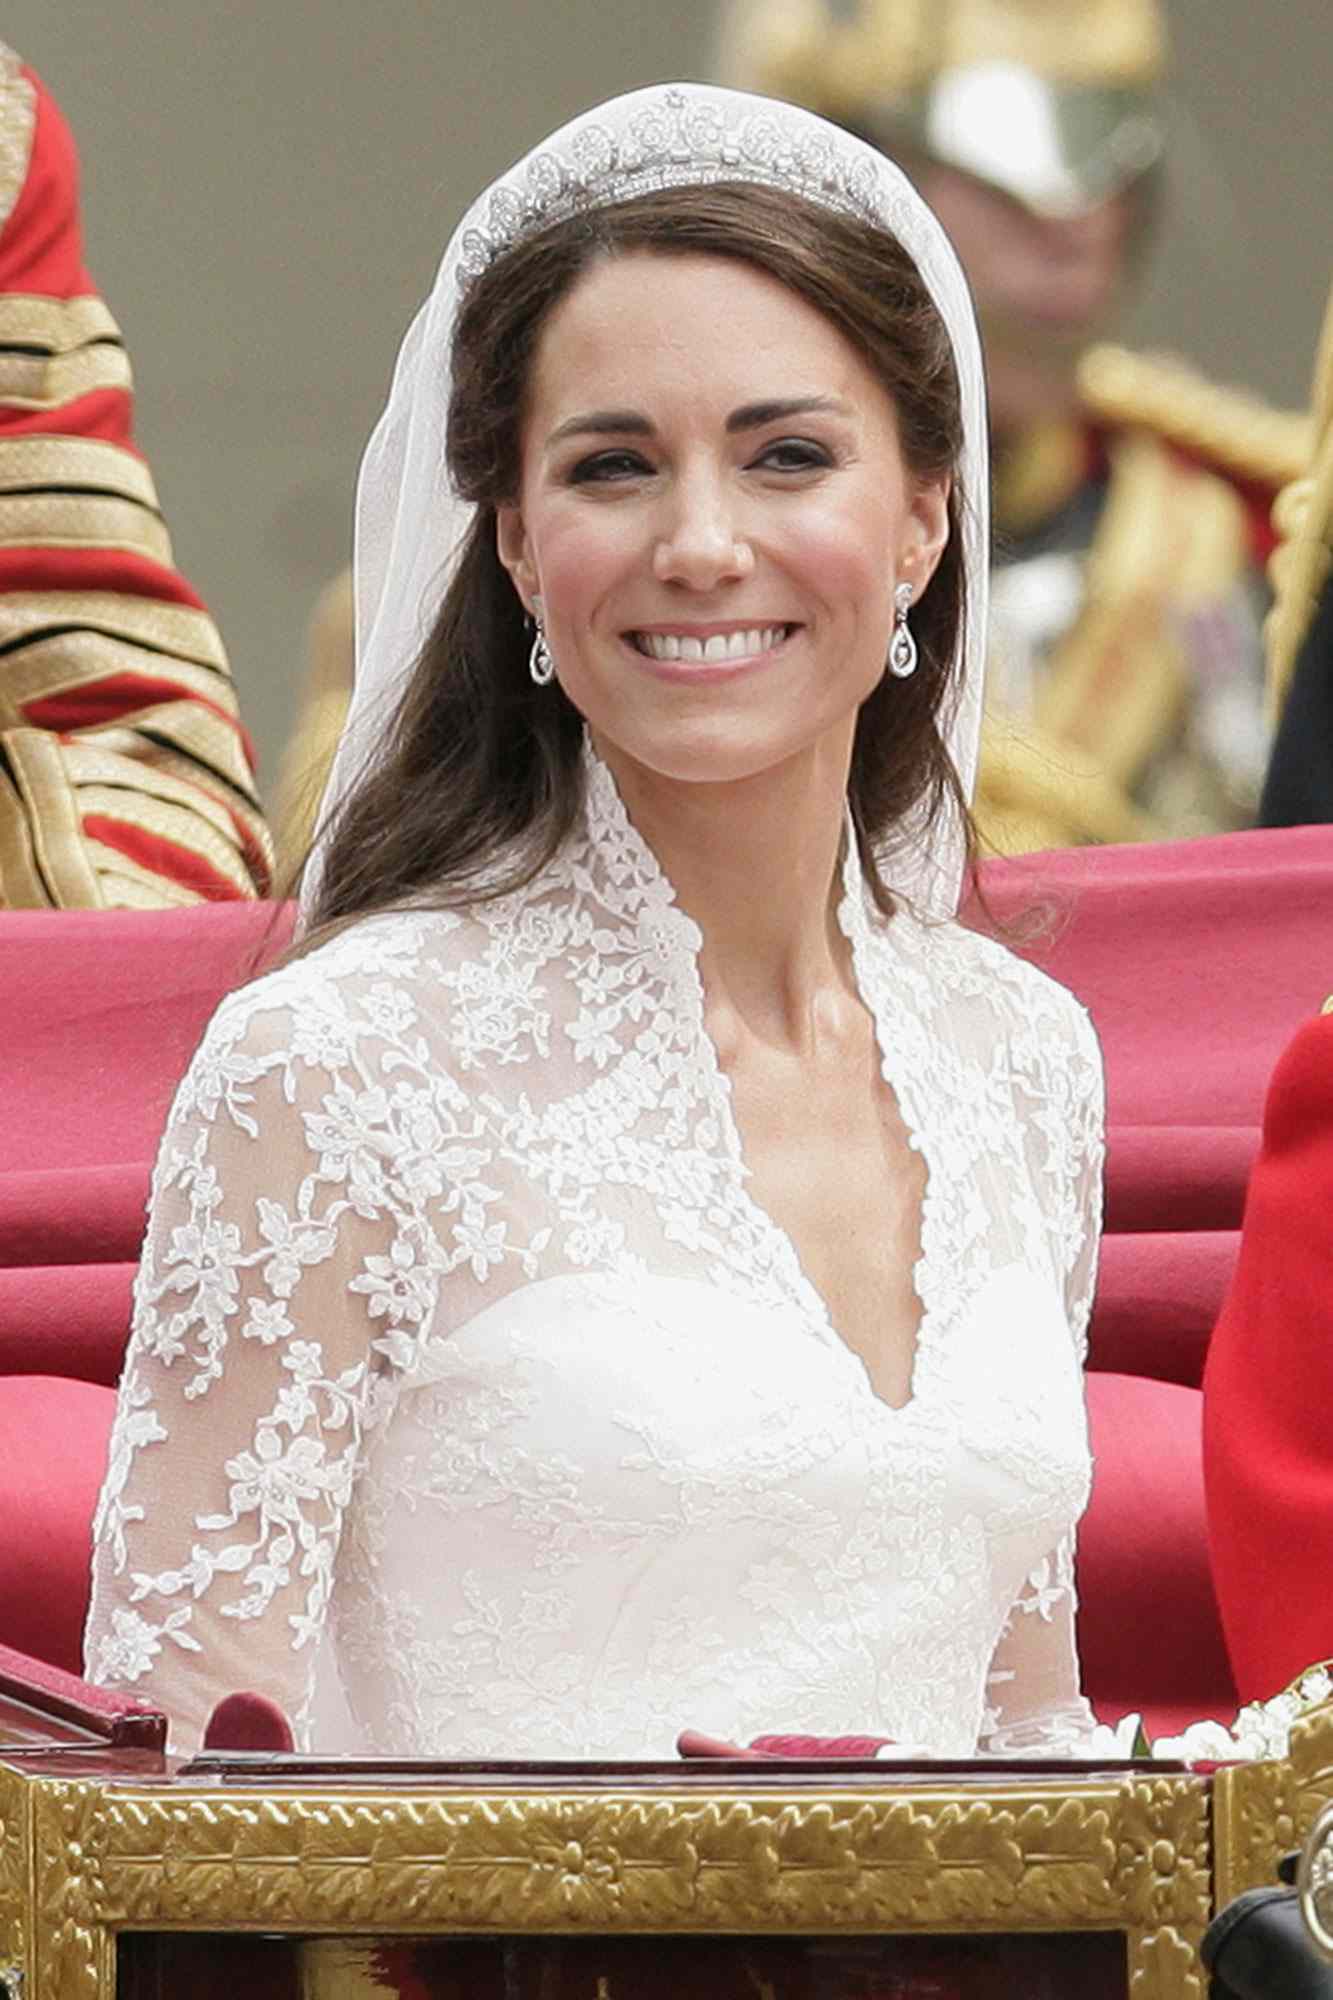 Kate Middleton Membuatnya 'Sangat Jelas' Apa yang Dia Inginkan untuk Kue Pernikahan Royalnya, Kata Baker